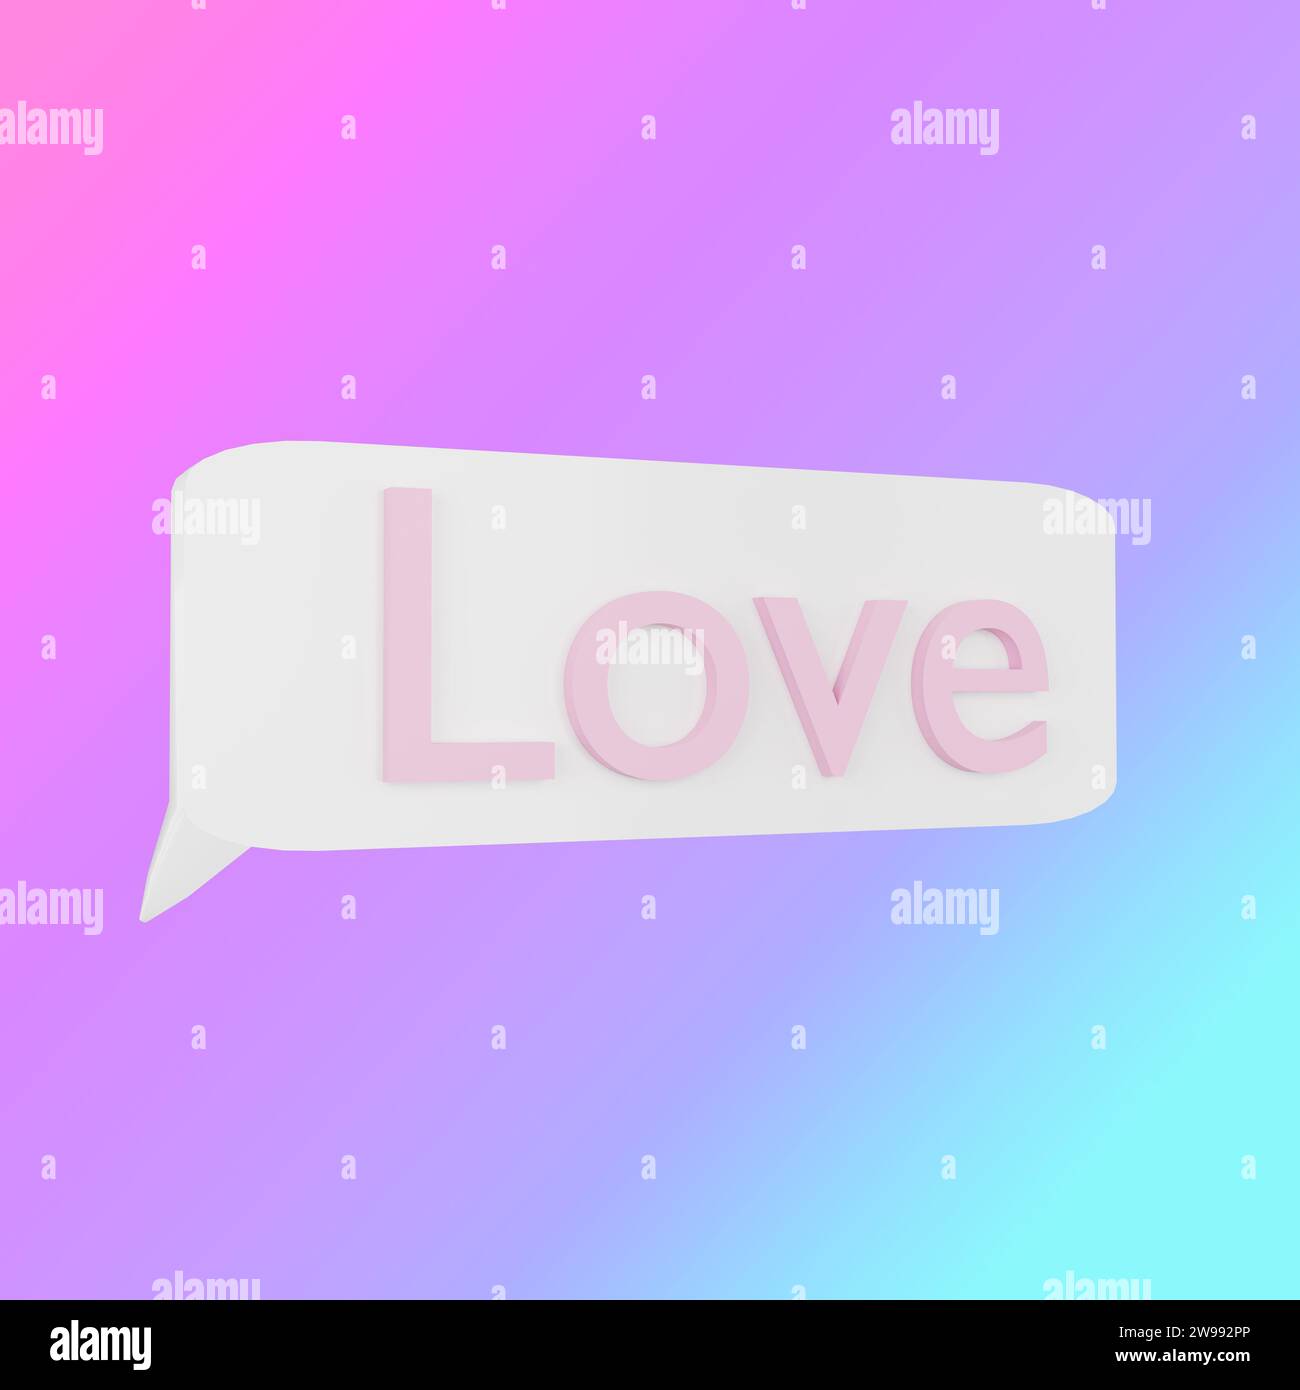 Einfache, aber kraftvolle „Love“-Botschaft, die Emotionen anregt. Stockfoto